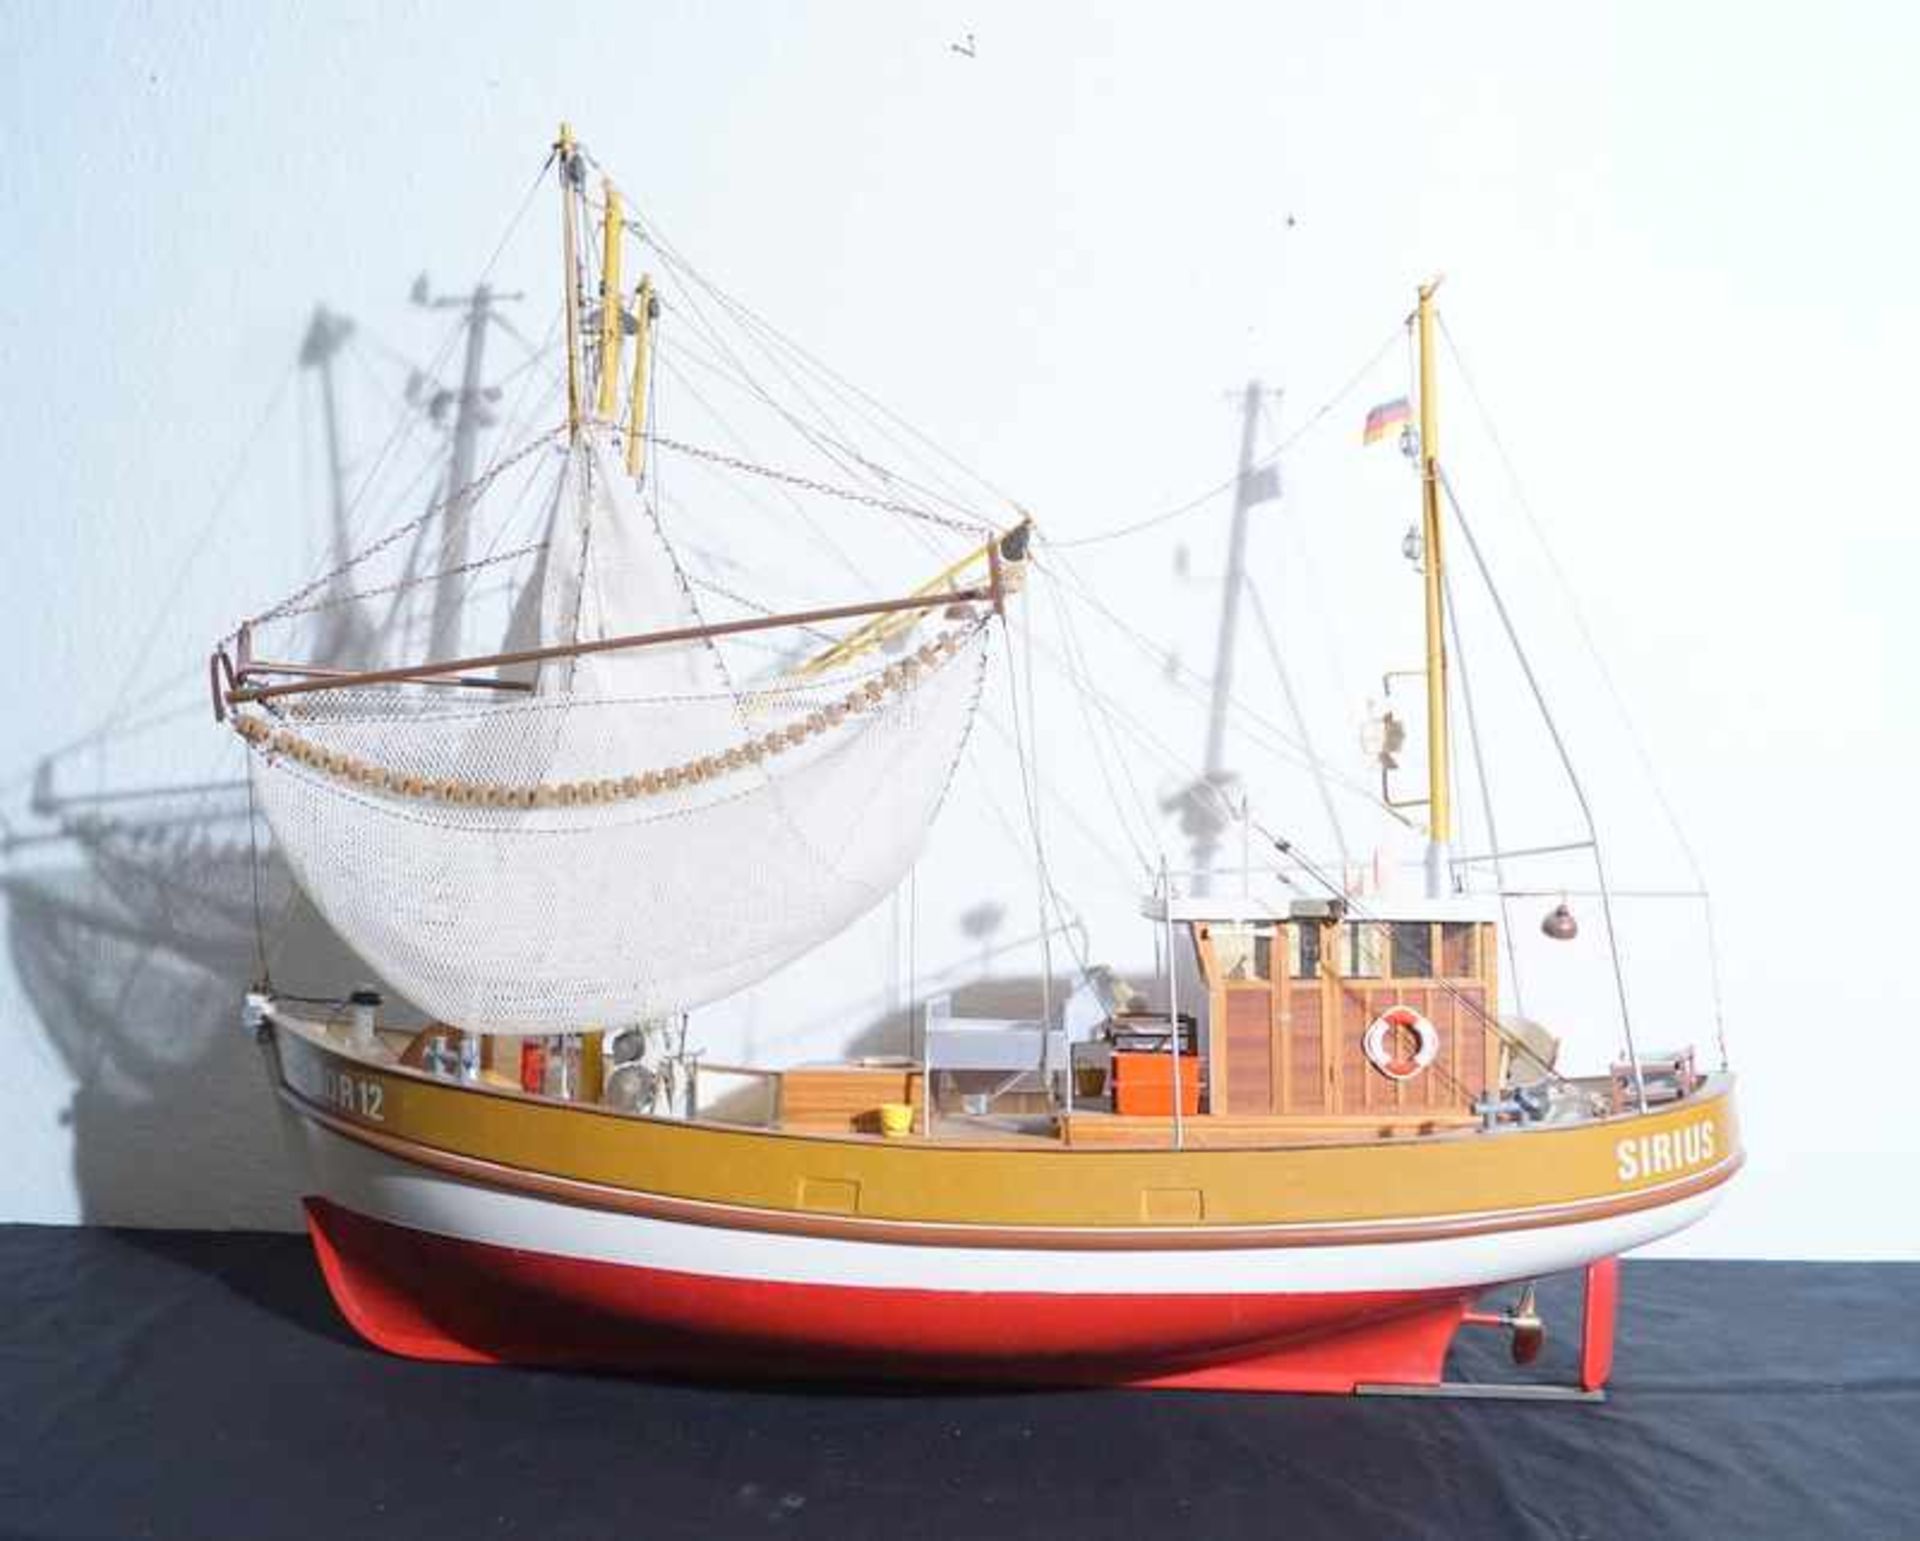 Schiffsmodell "Dorum"Krabbenfänger, fast ausschließlich aus Kunststoff, wenige Aufbauten aus Holz,